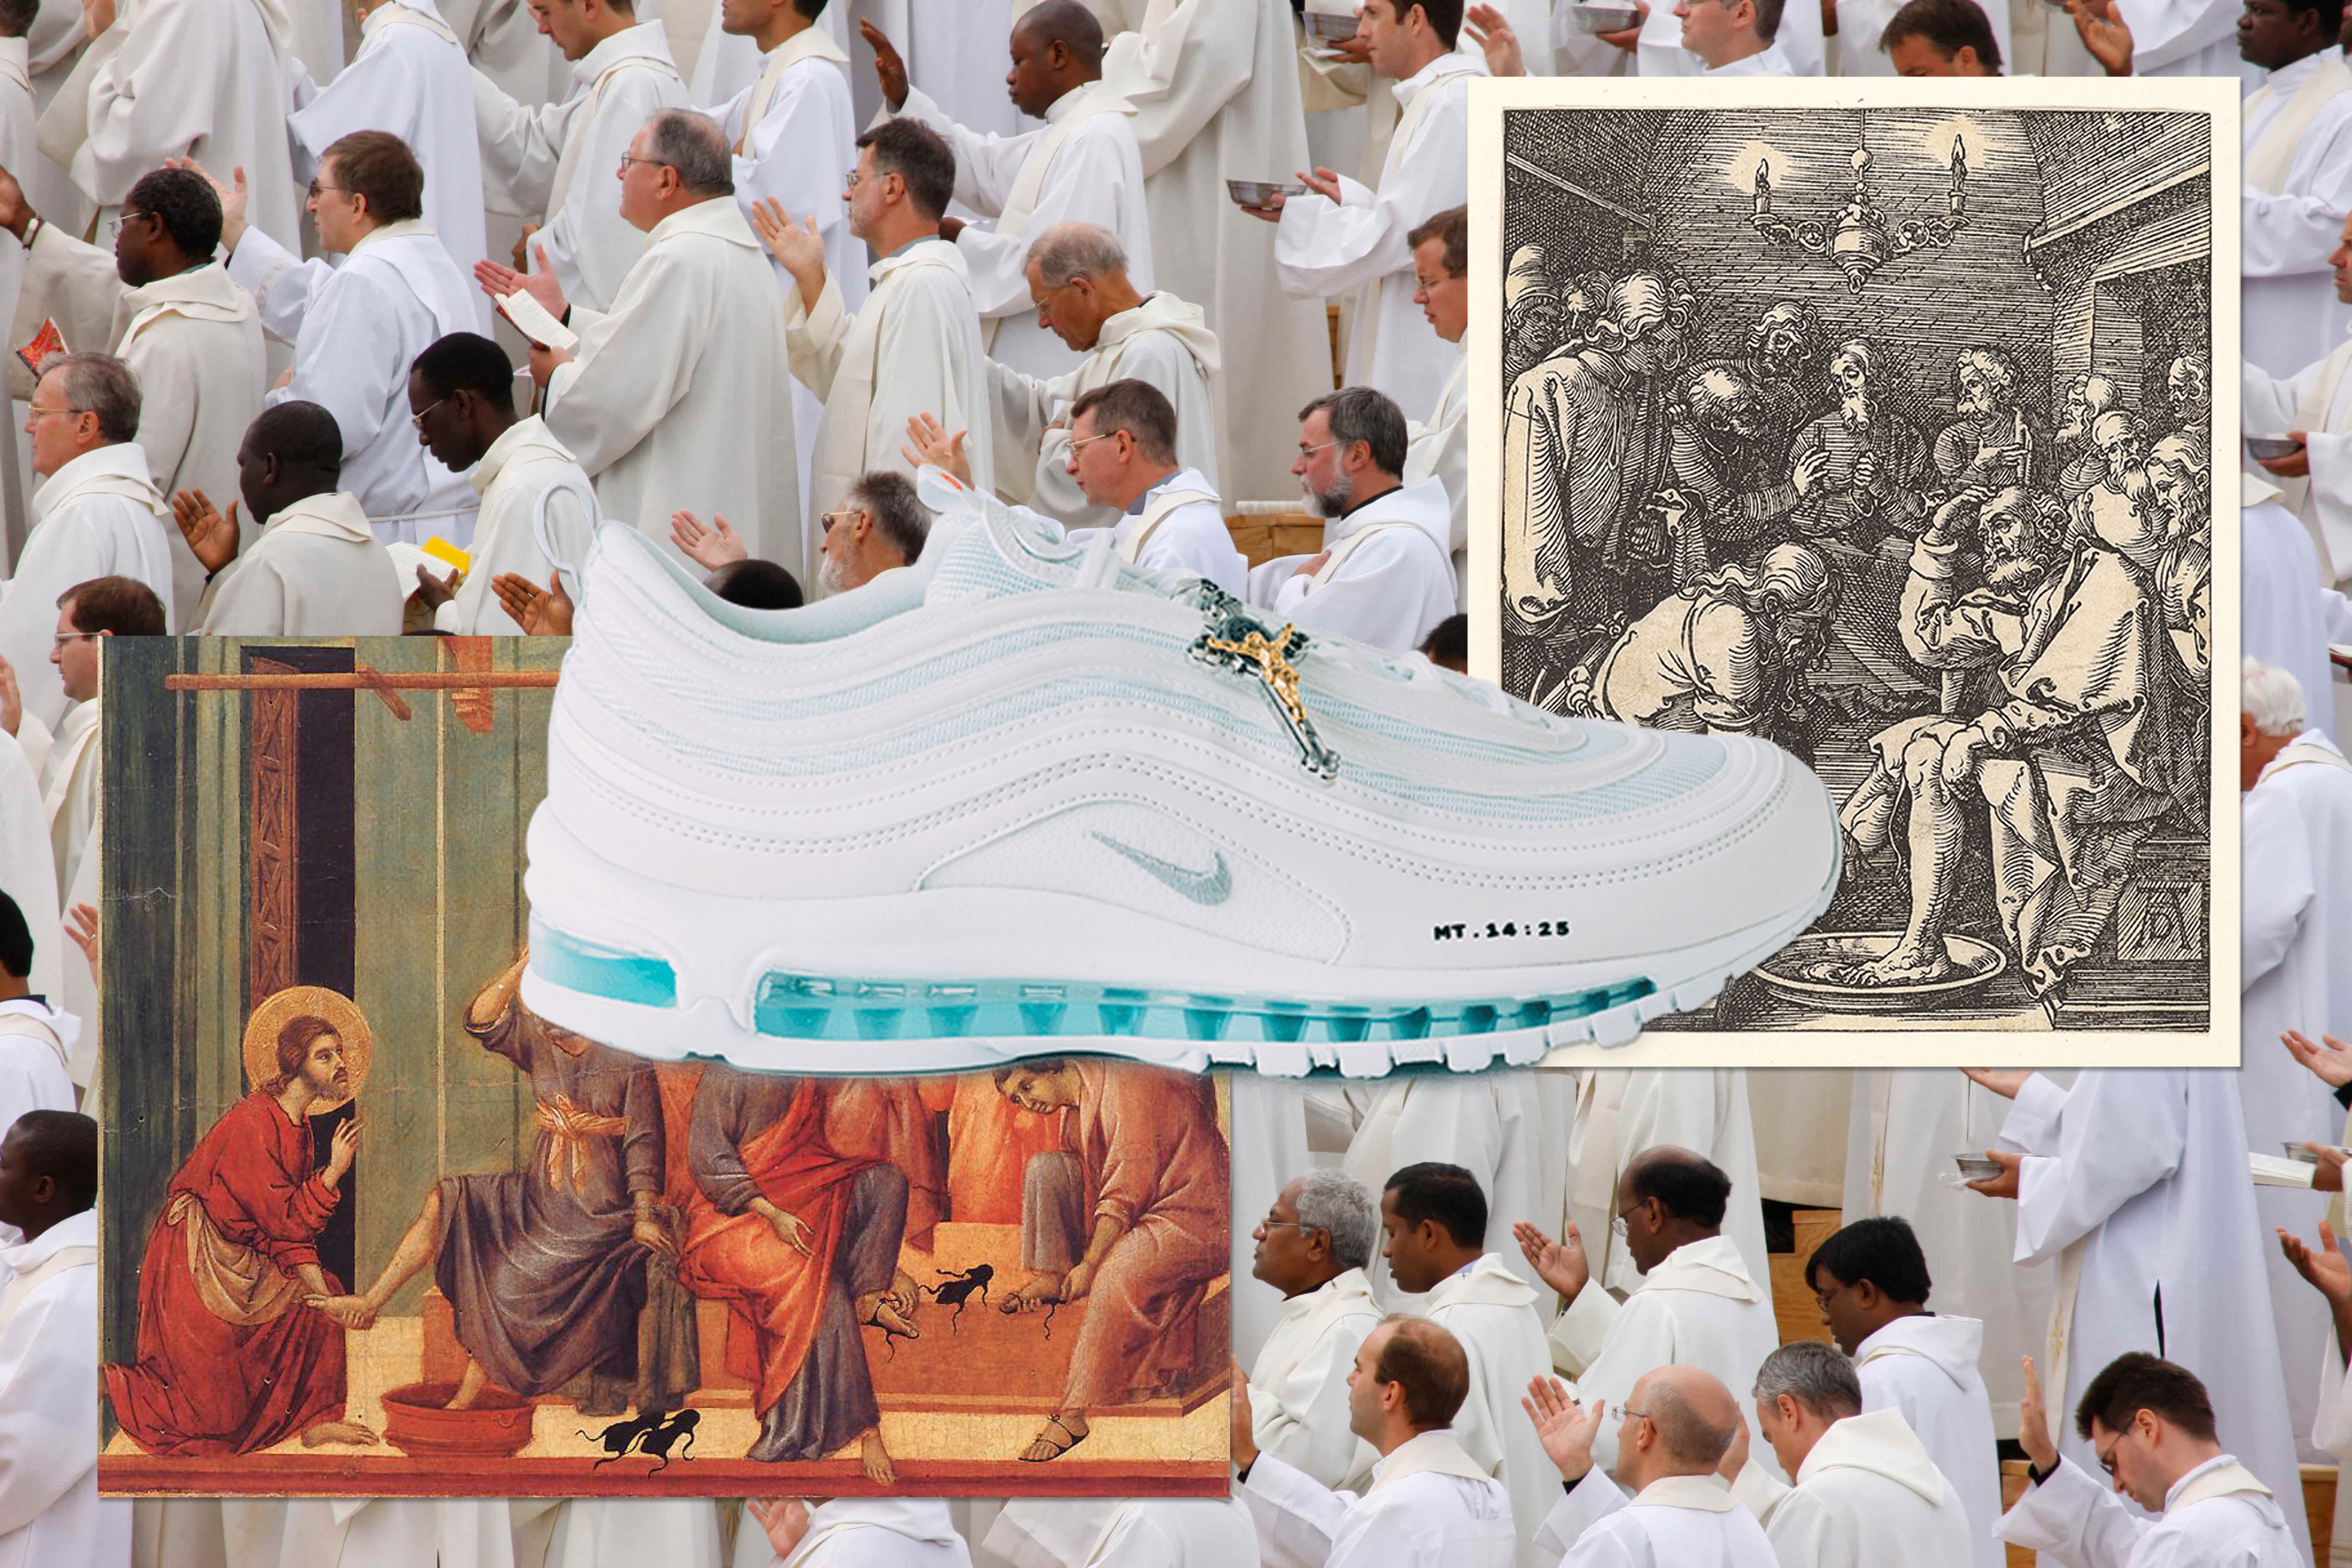 揭秘 Google 最热搜球鞋「Jesus Shoe」背后团体及创作故事 | 专访 MSCHF 创始人 Gabriel Whaley